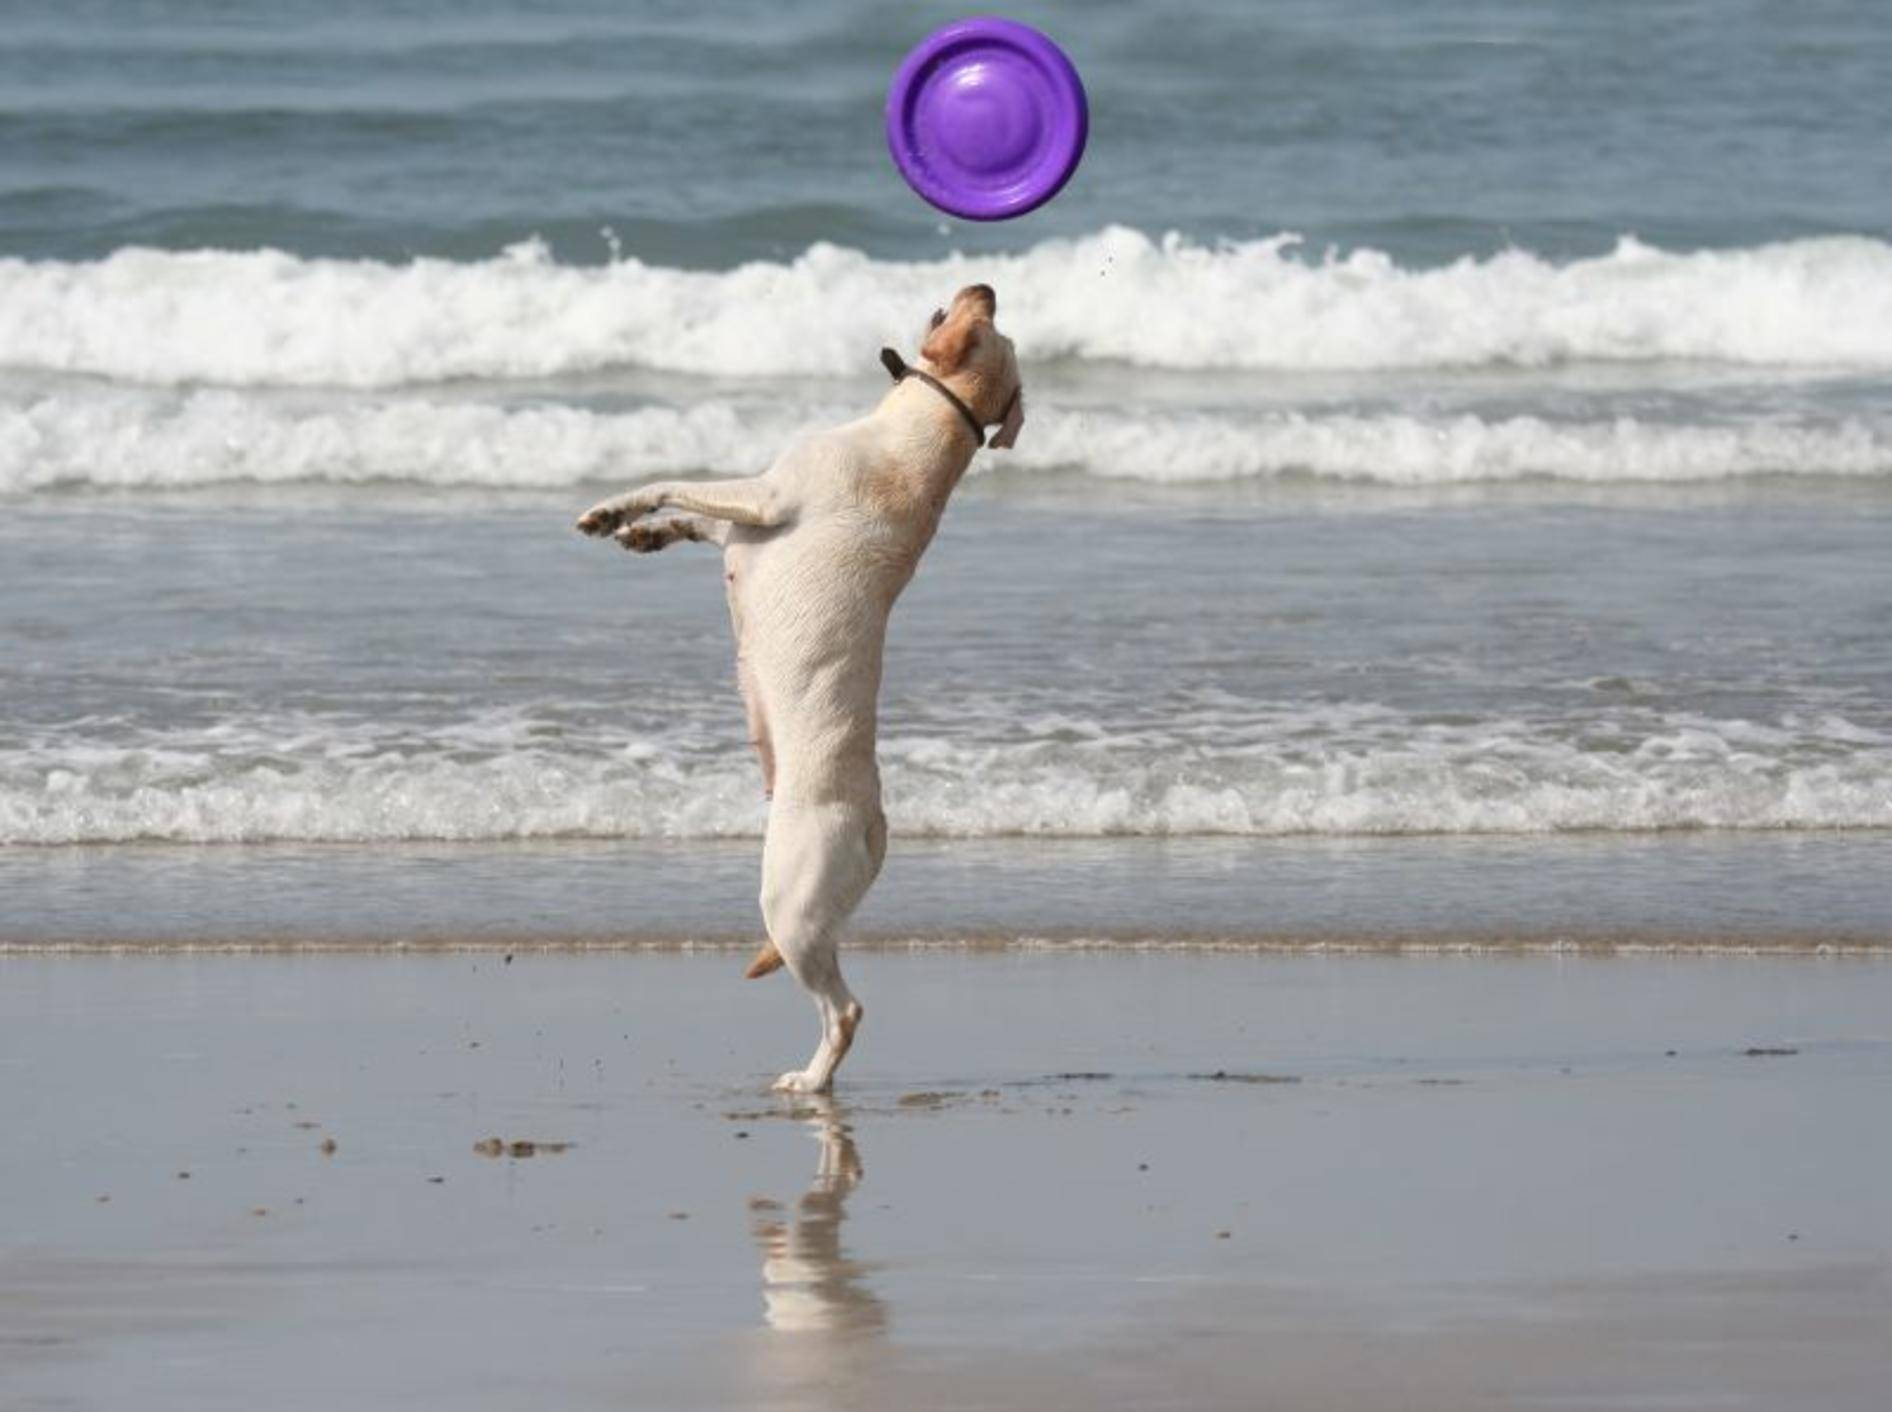 Toben am Strand: Das macht Hunden Spaß! – Bild: Shutterstock / Fernando Jose V. Soares